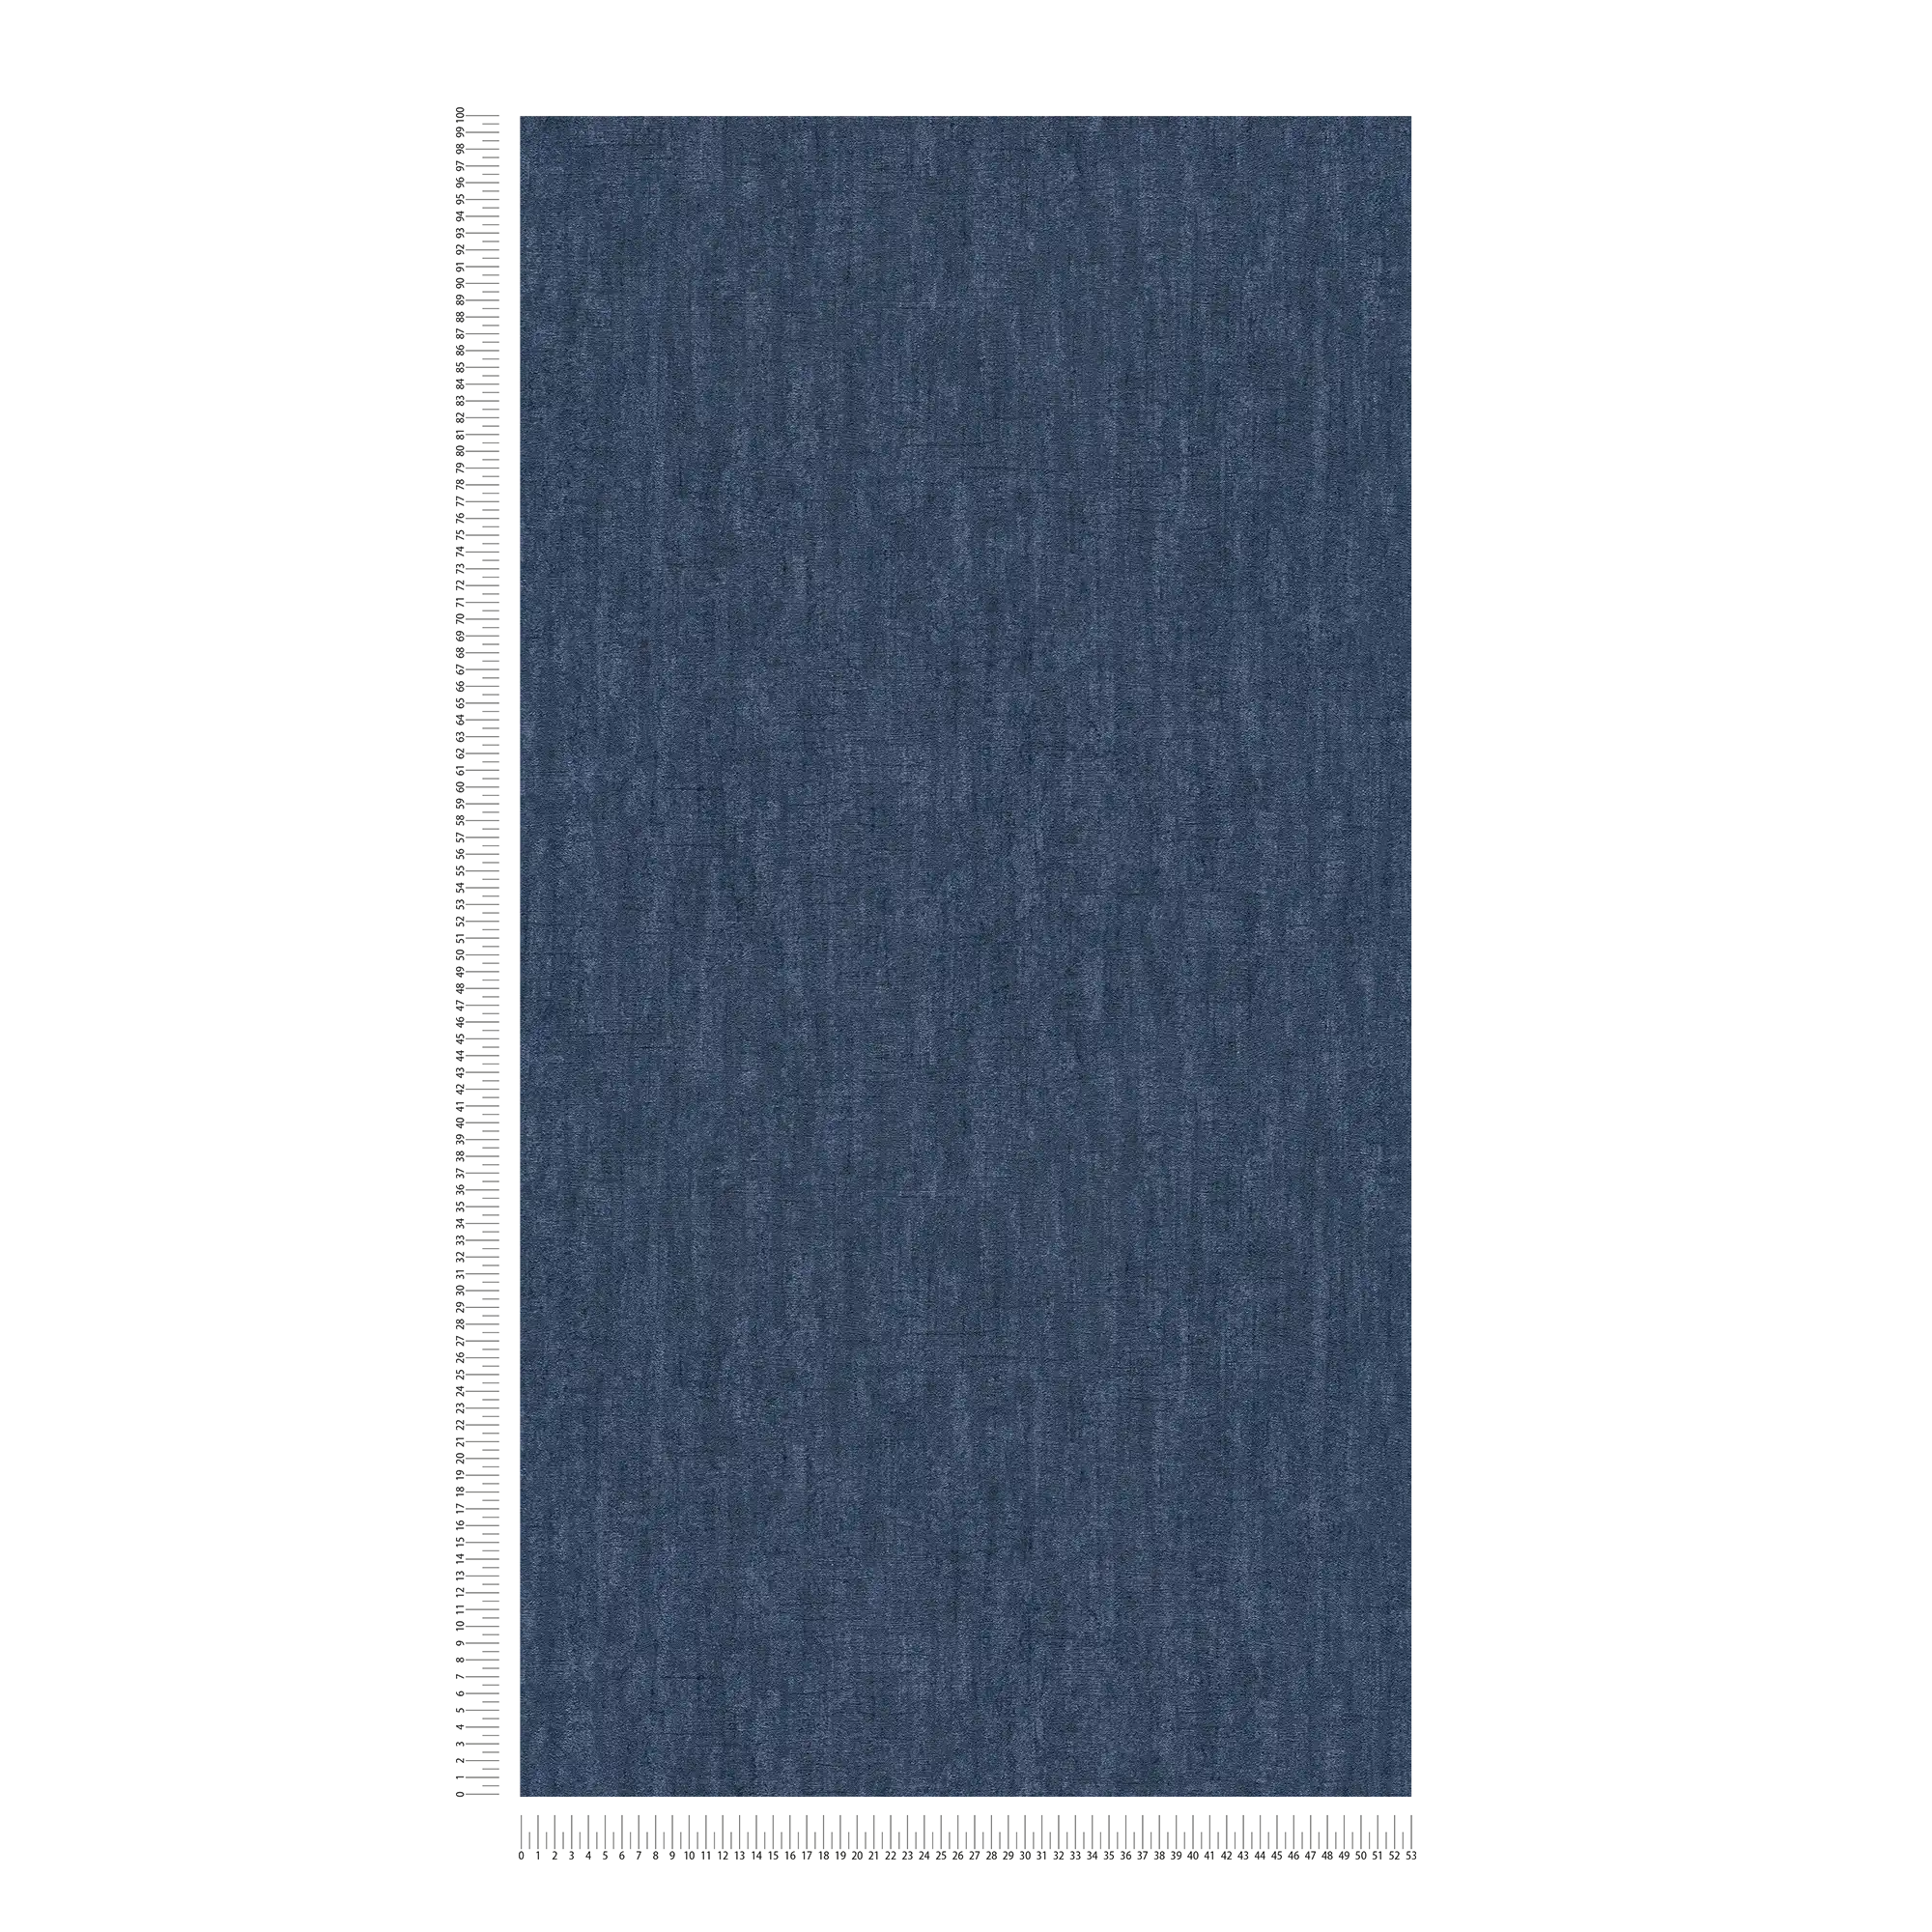             behang donkerblauw gevlekt, met structuur & glanseffect - blauw
        